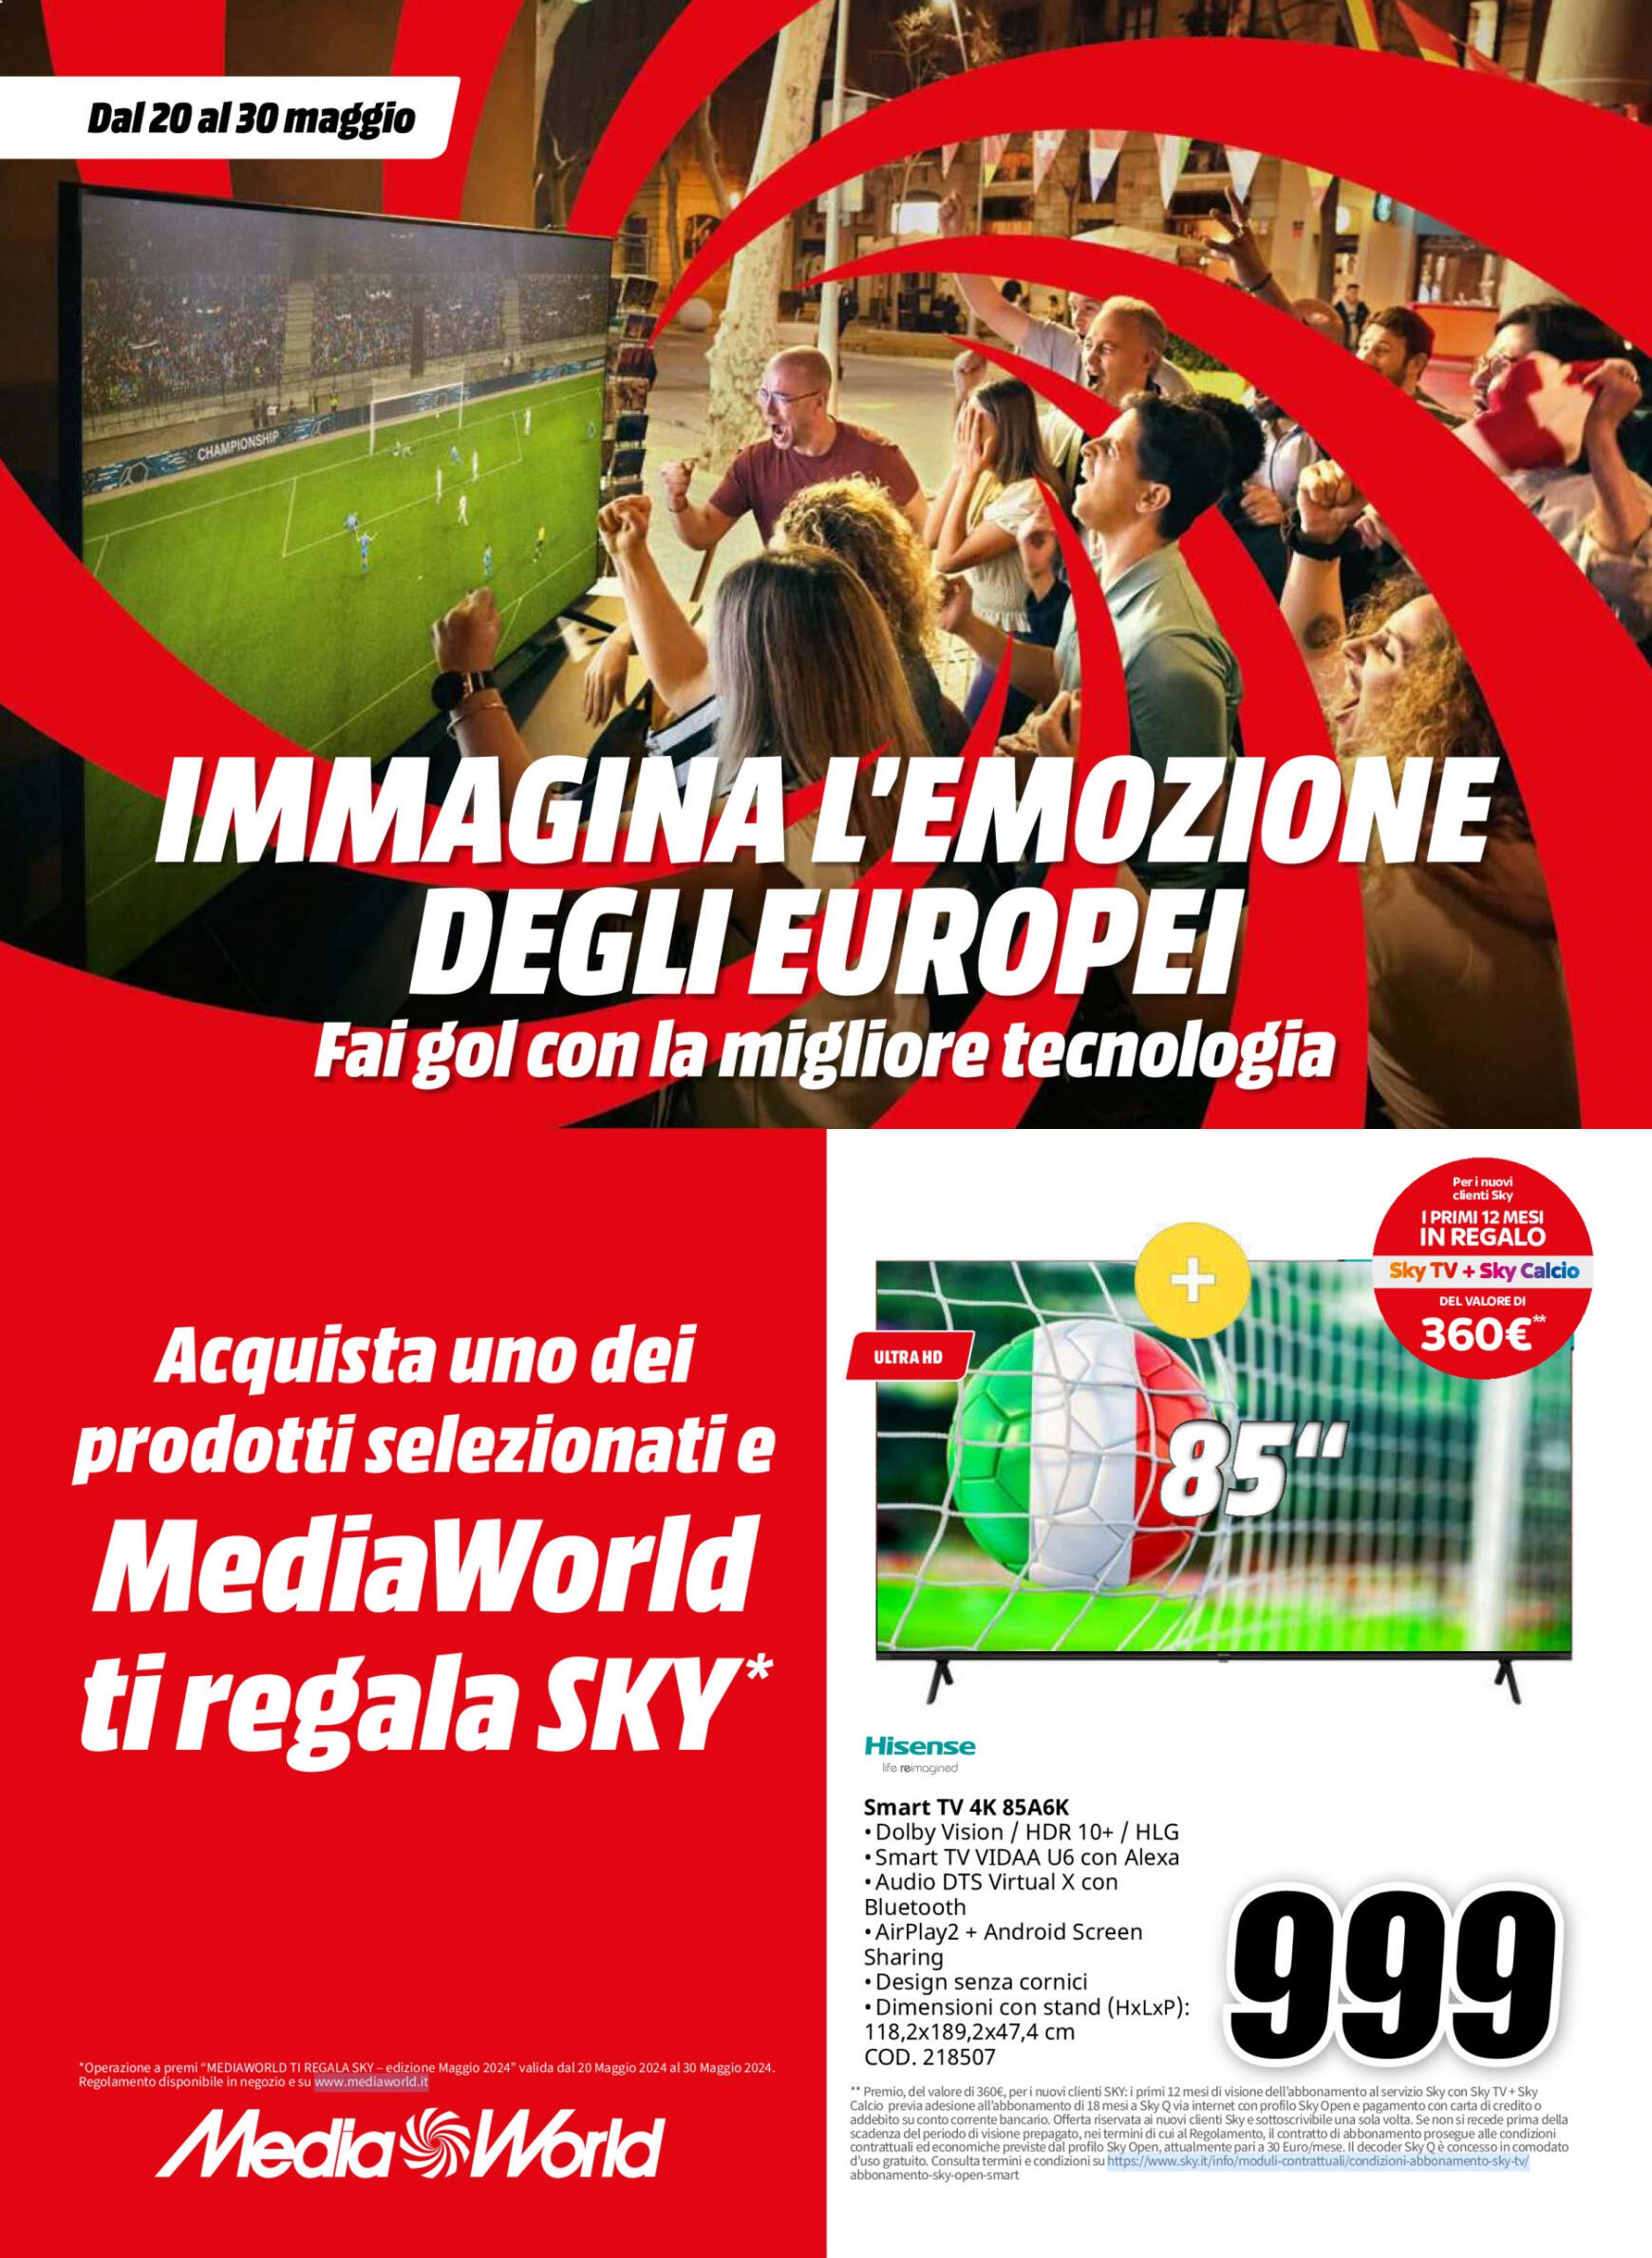 mediaworld - Nuovo volantino Mediaworld 20.05. - 30.05.